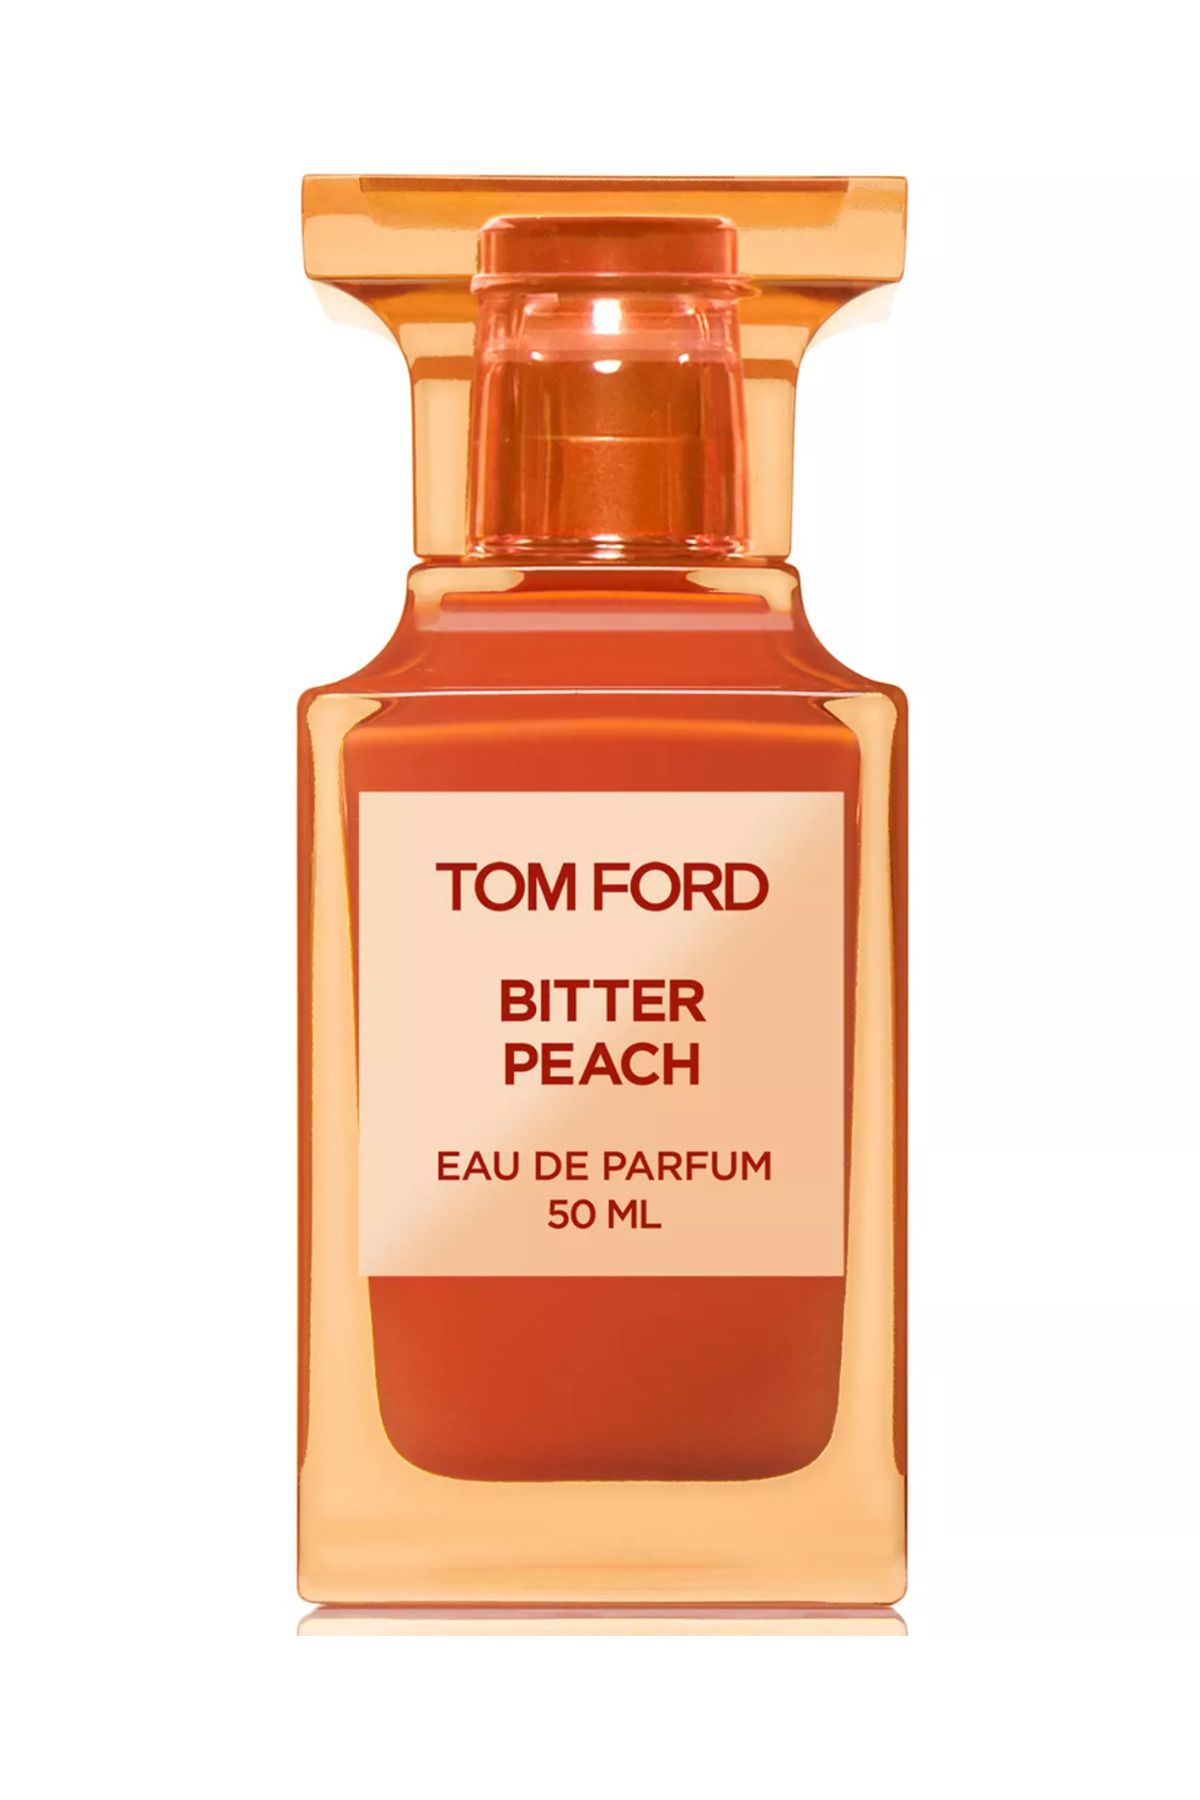 Tom Ford Bitter Peach Eau de Parfum 50 Ml